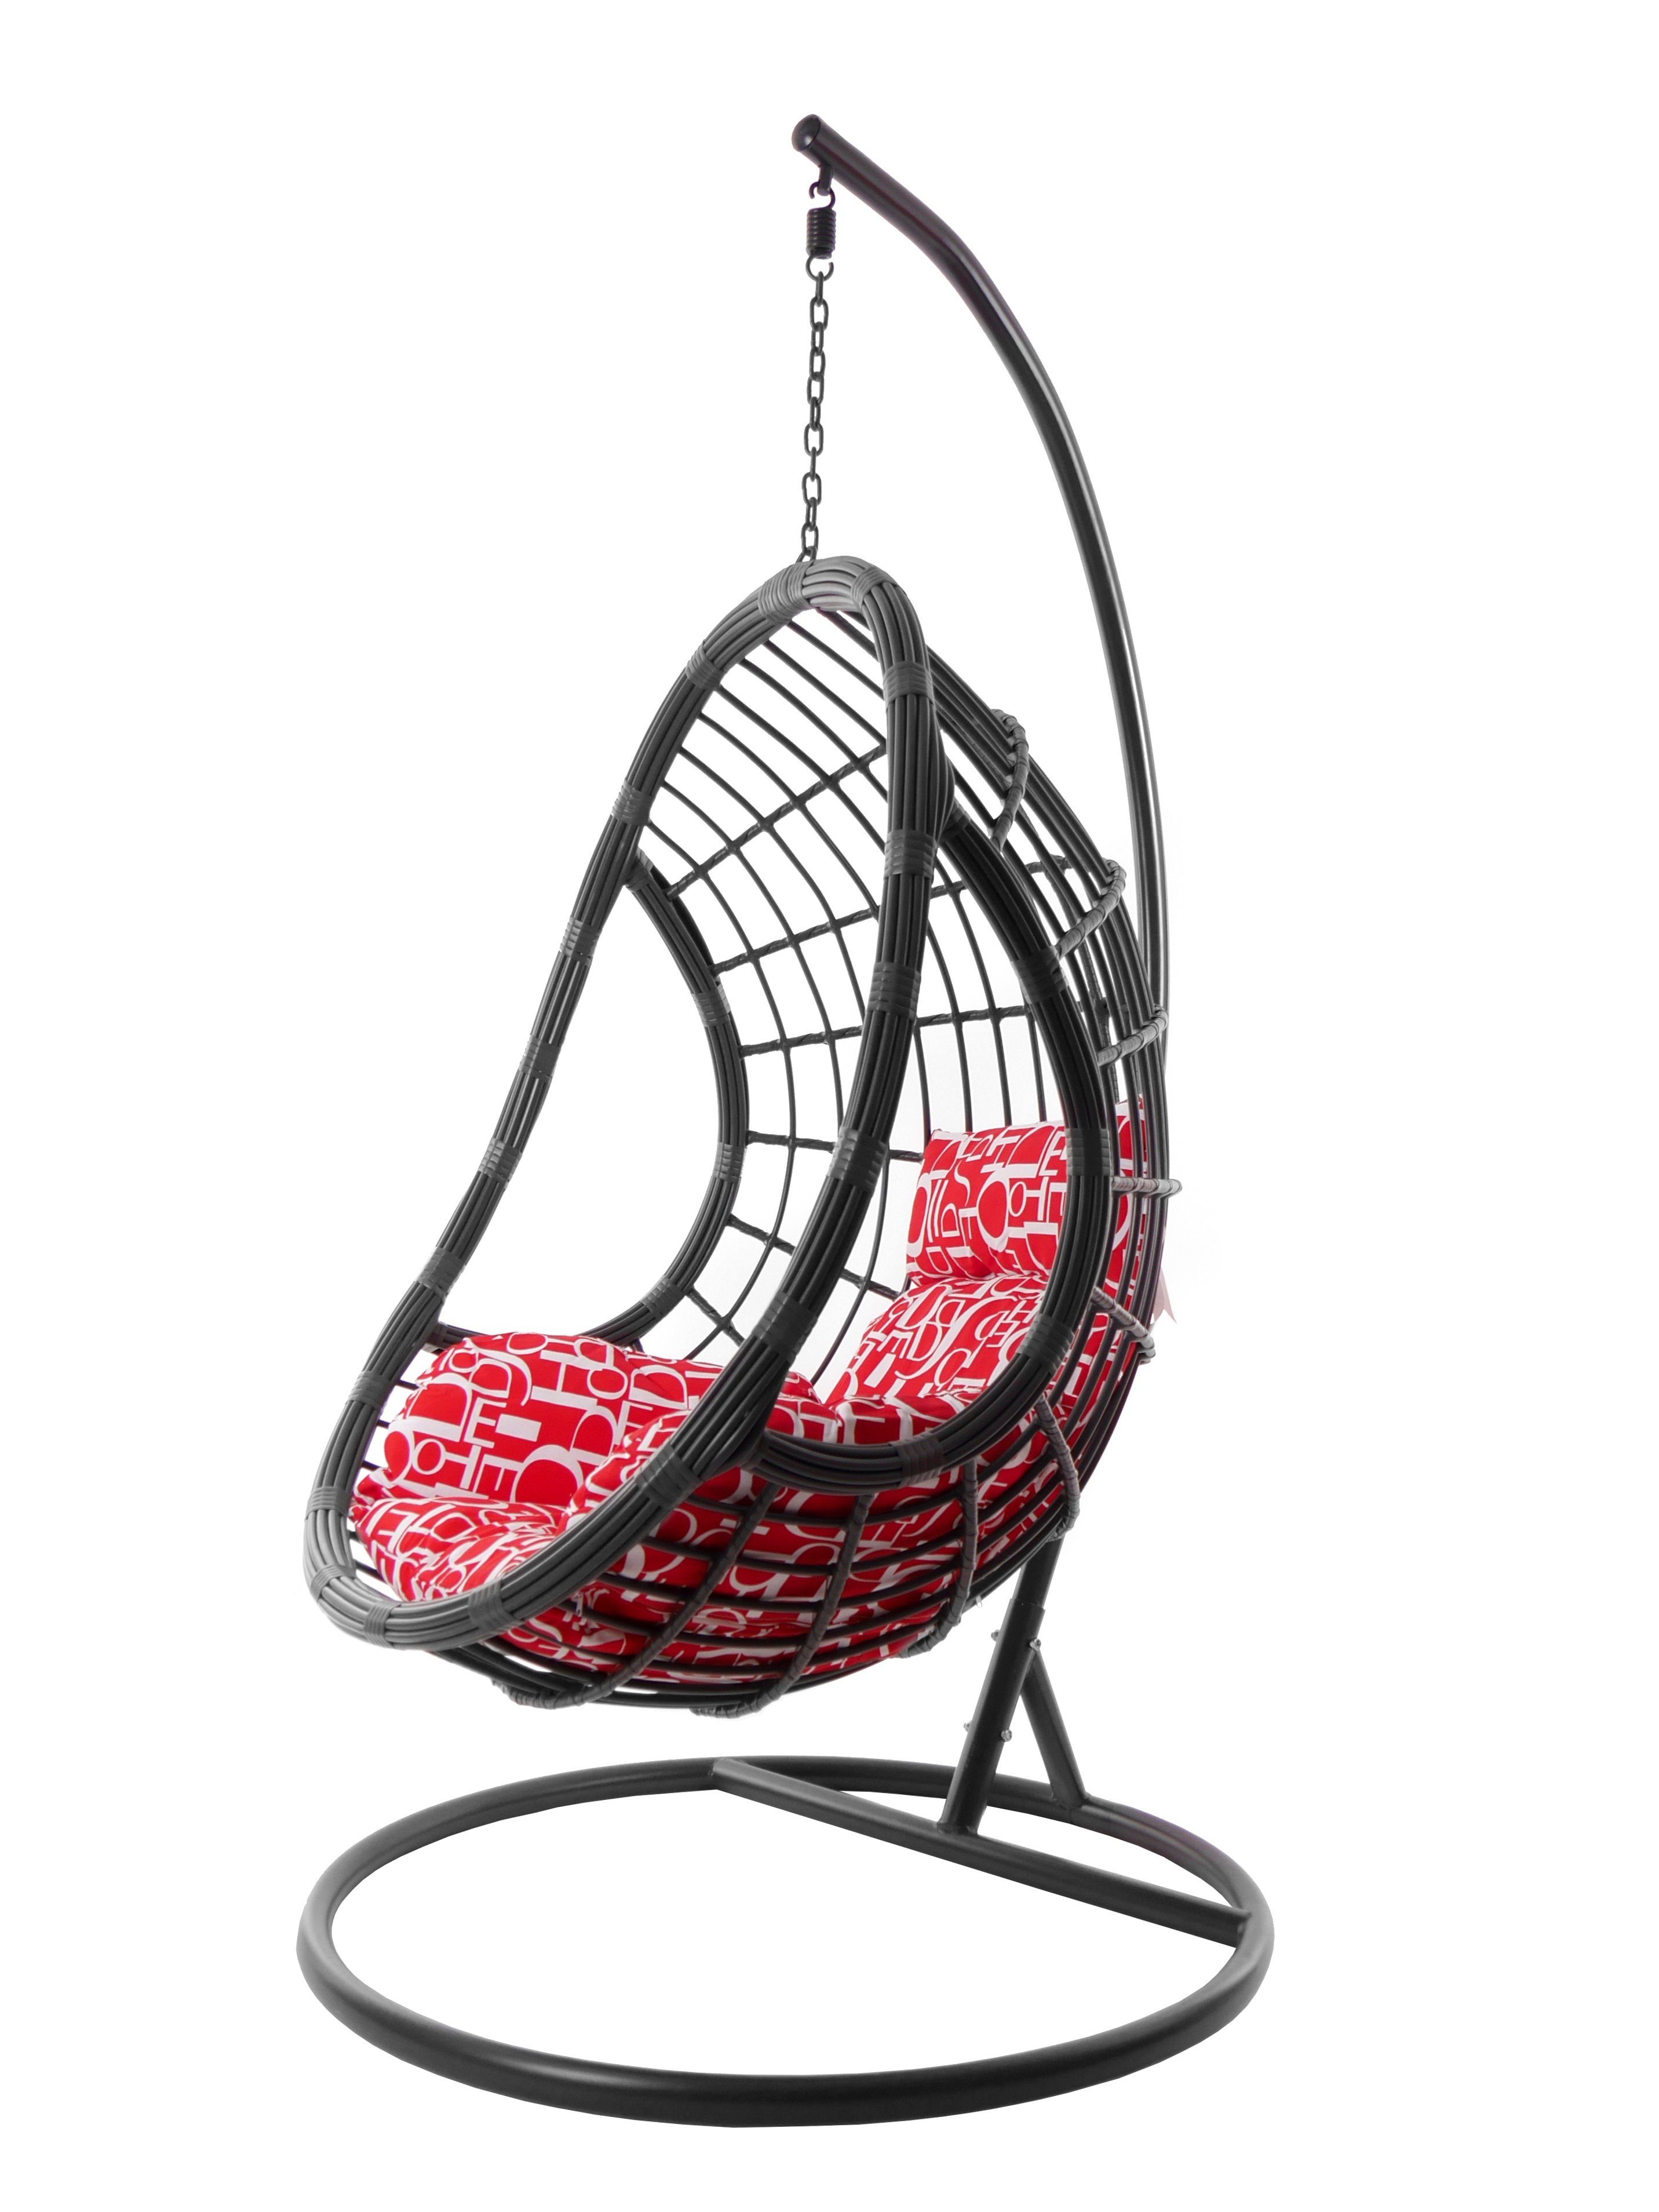 grau, inklusive Hängestuhl und Hängesessel Hängesessel Loungemöbel, Kissen in buchstabenmuster moderne PALMANOVA red KIDEO grau, letter) (3100 Gestell